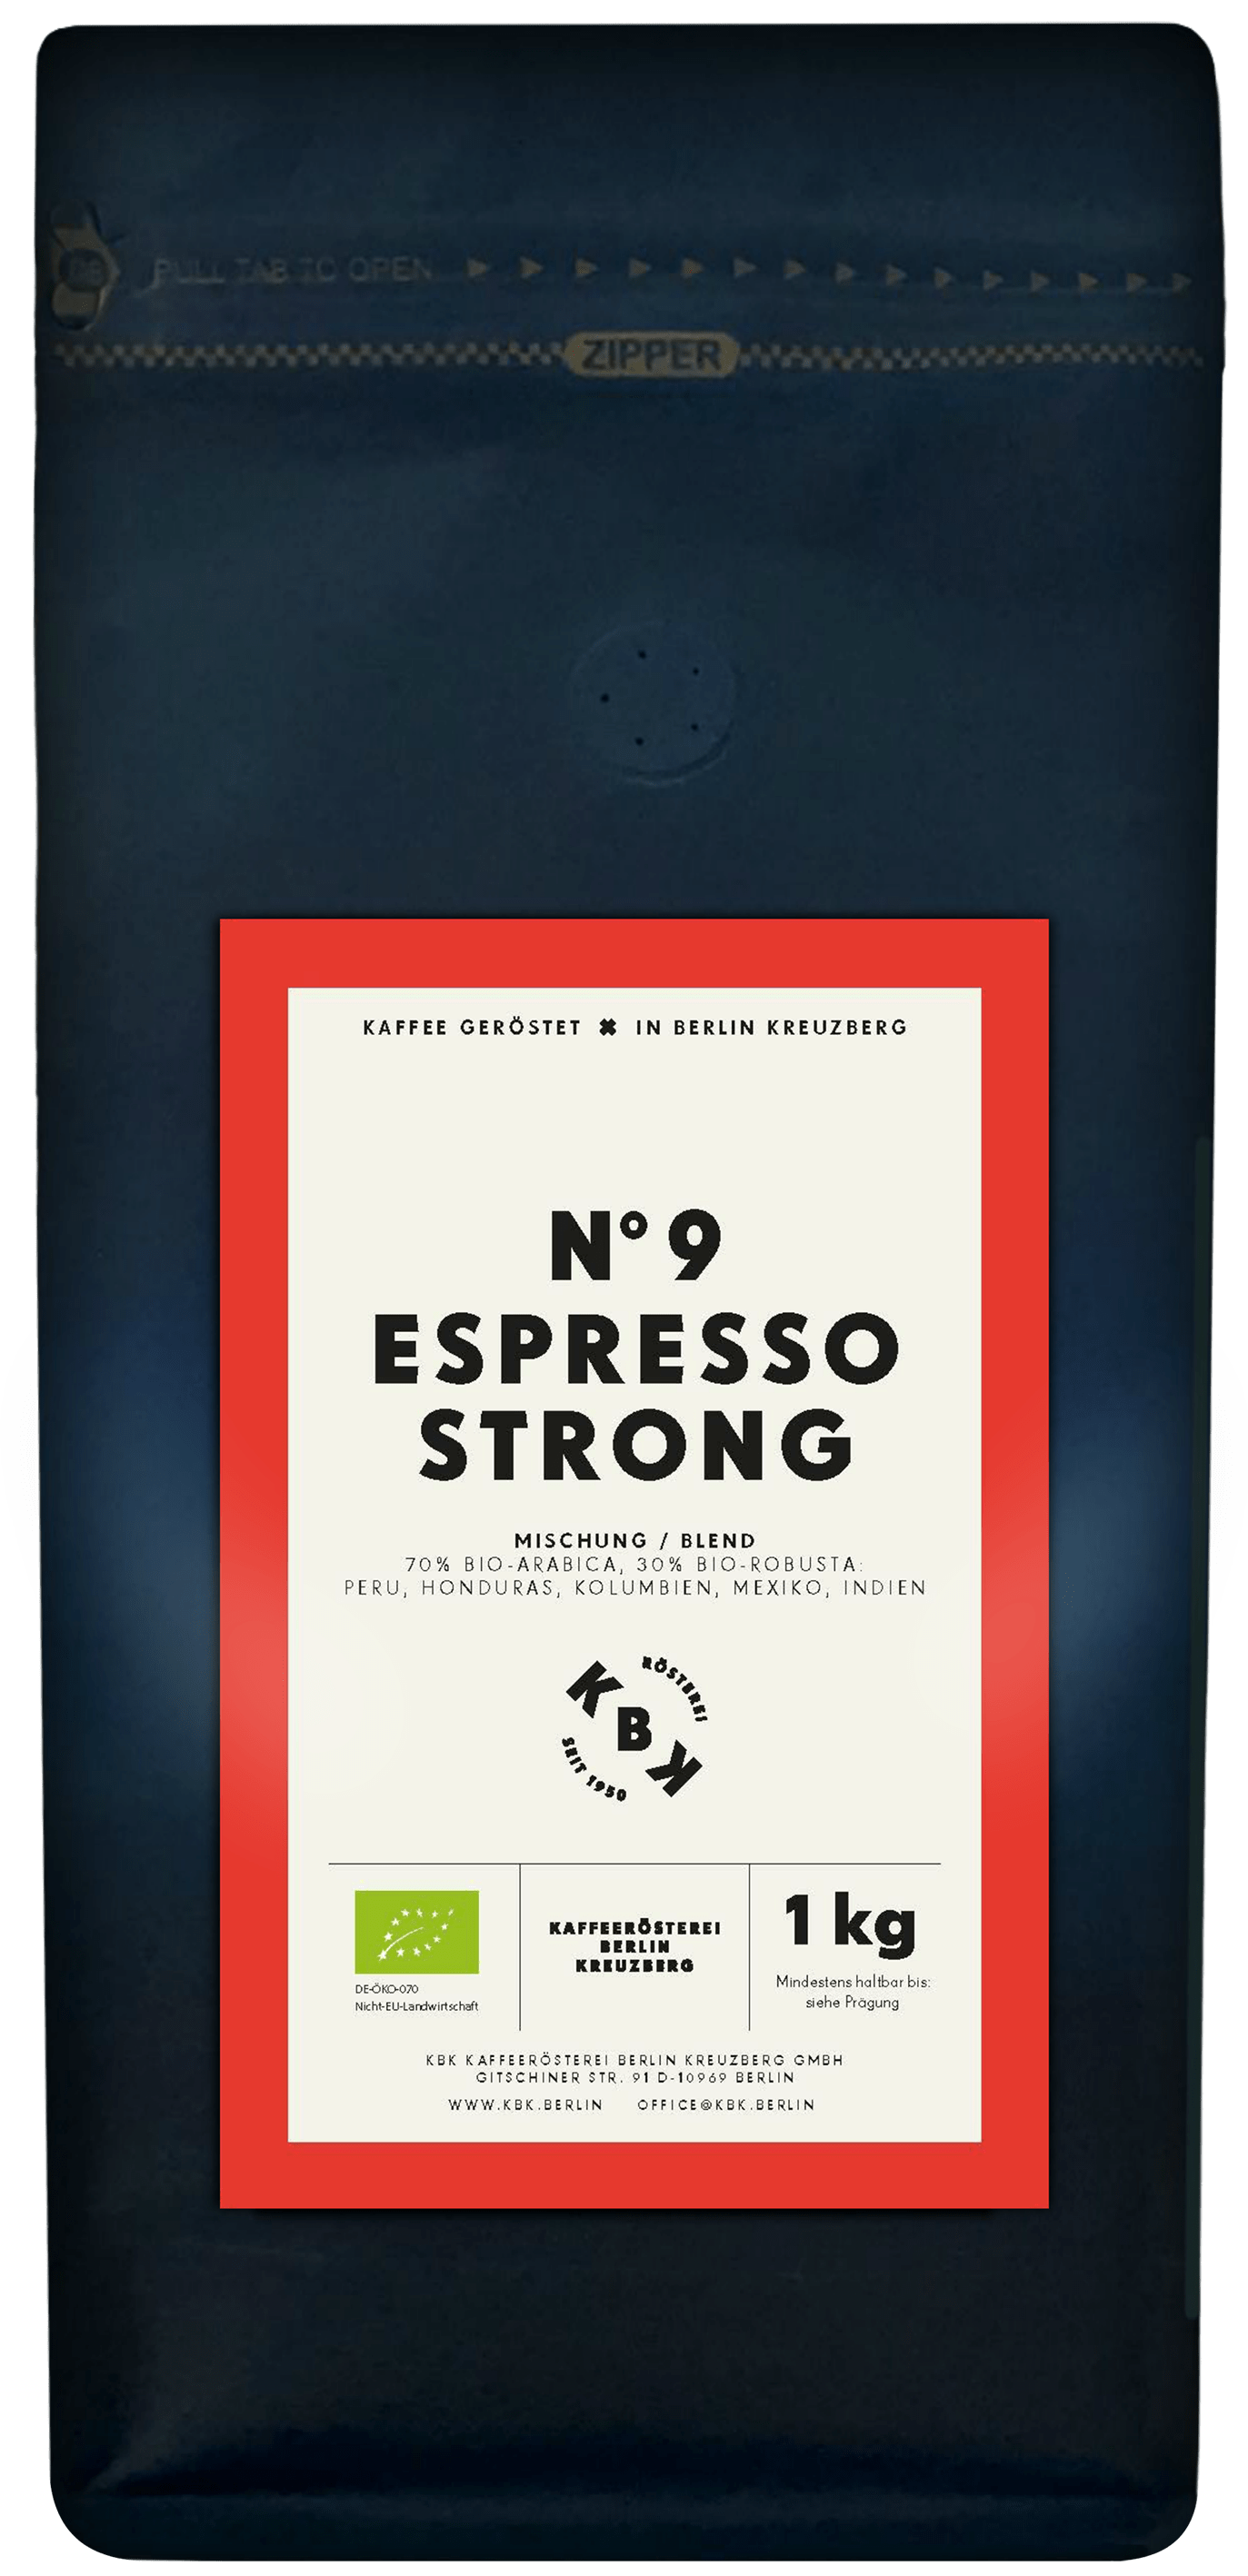 KBK 1kg Espresso strong Kaffee-Beutel